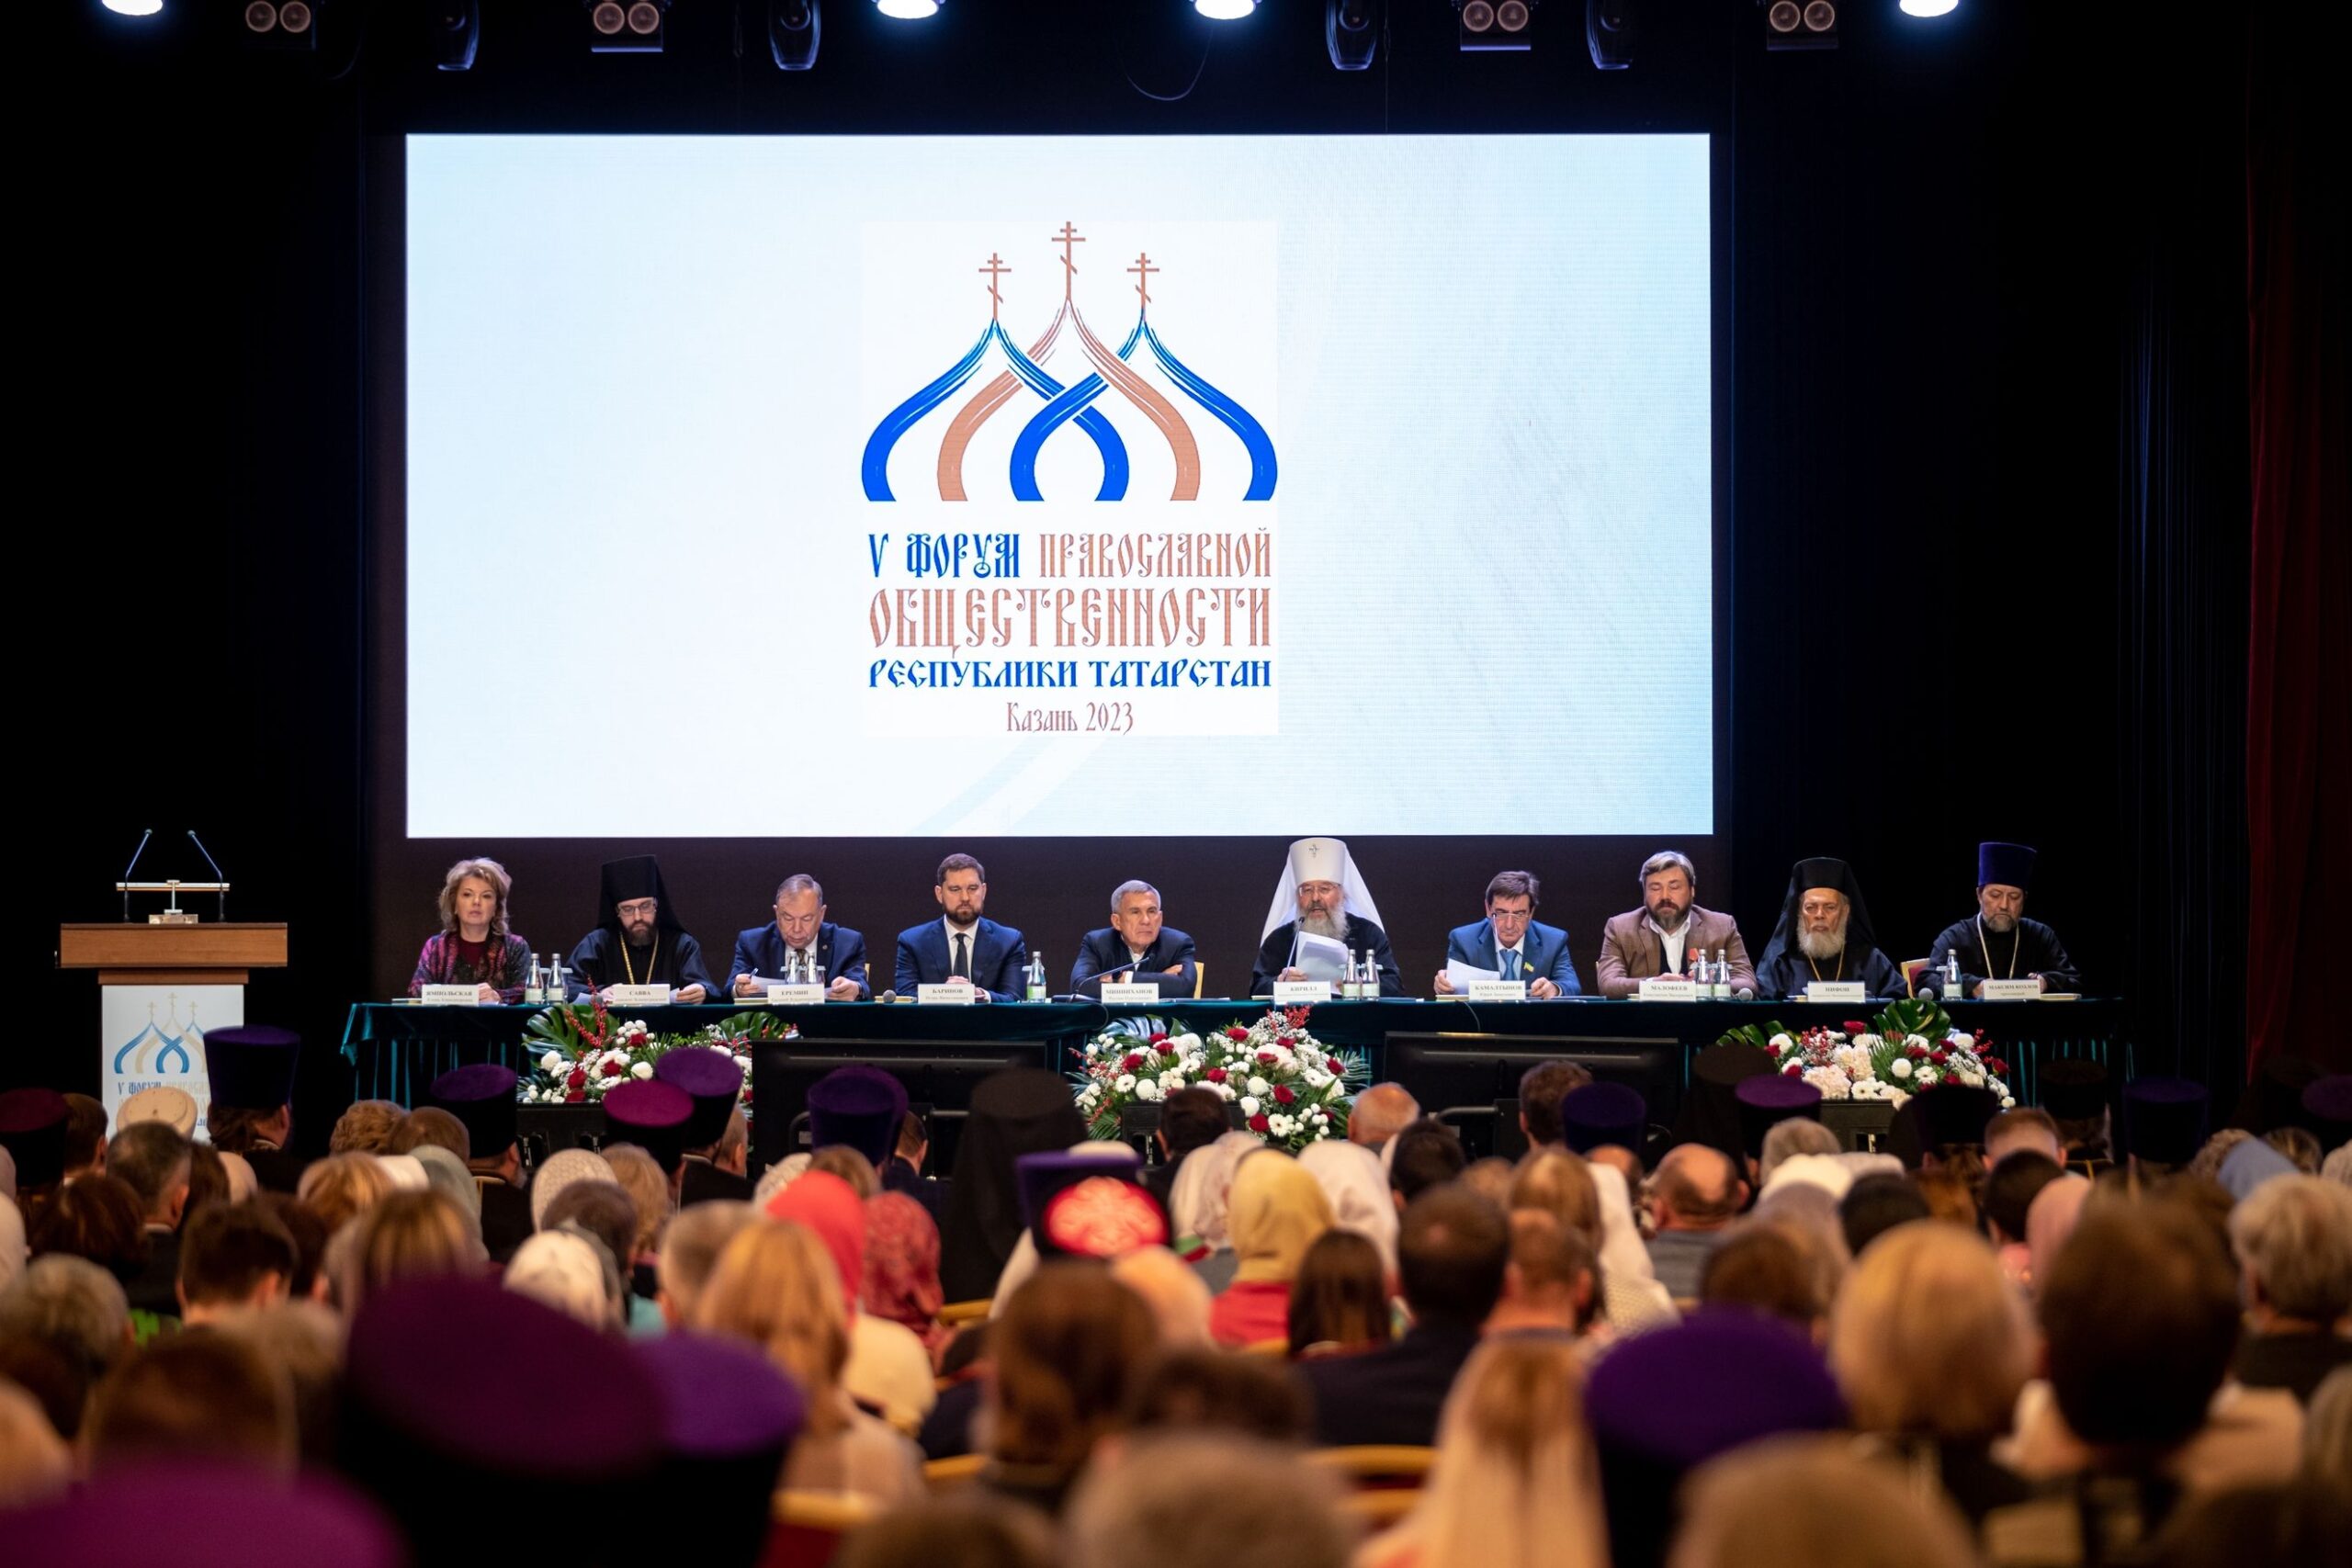 V Форум православной общественности Республики Татарстан прошел в Казани